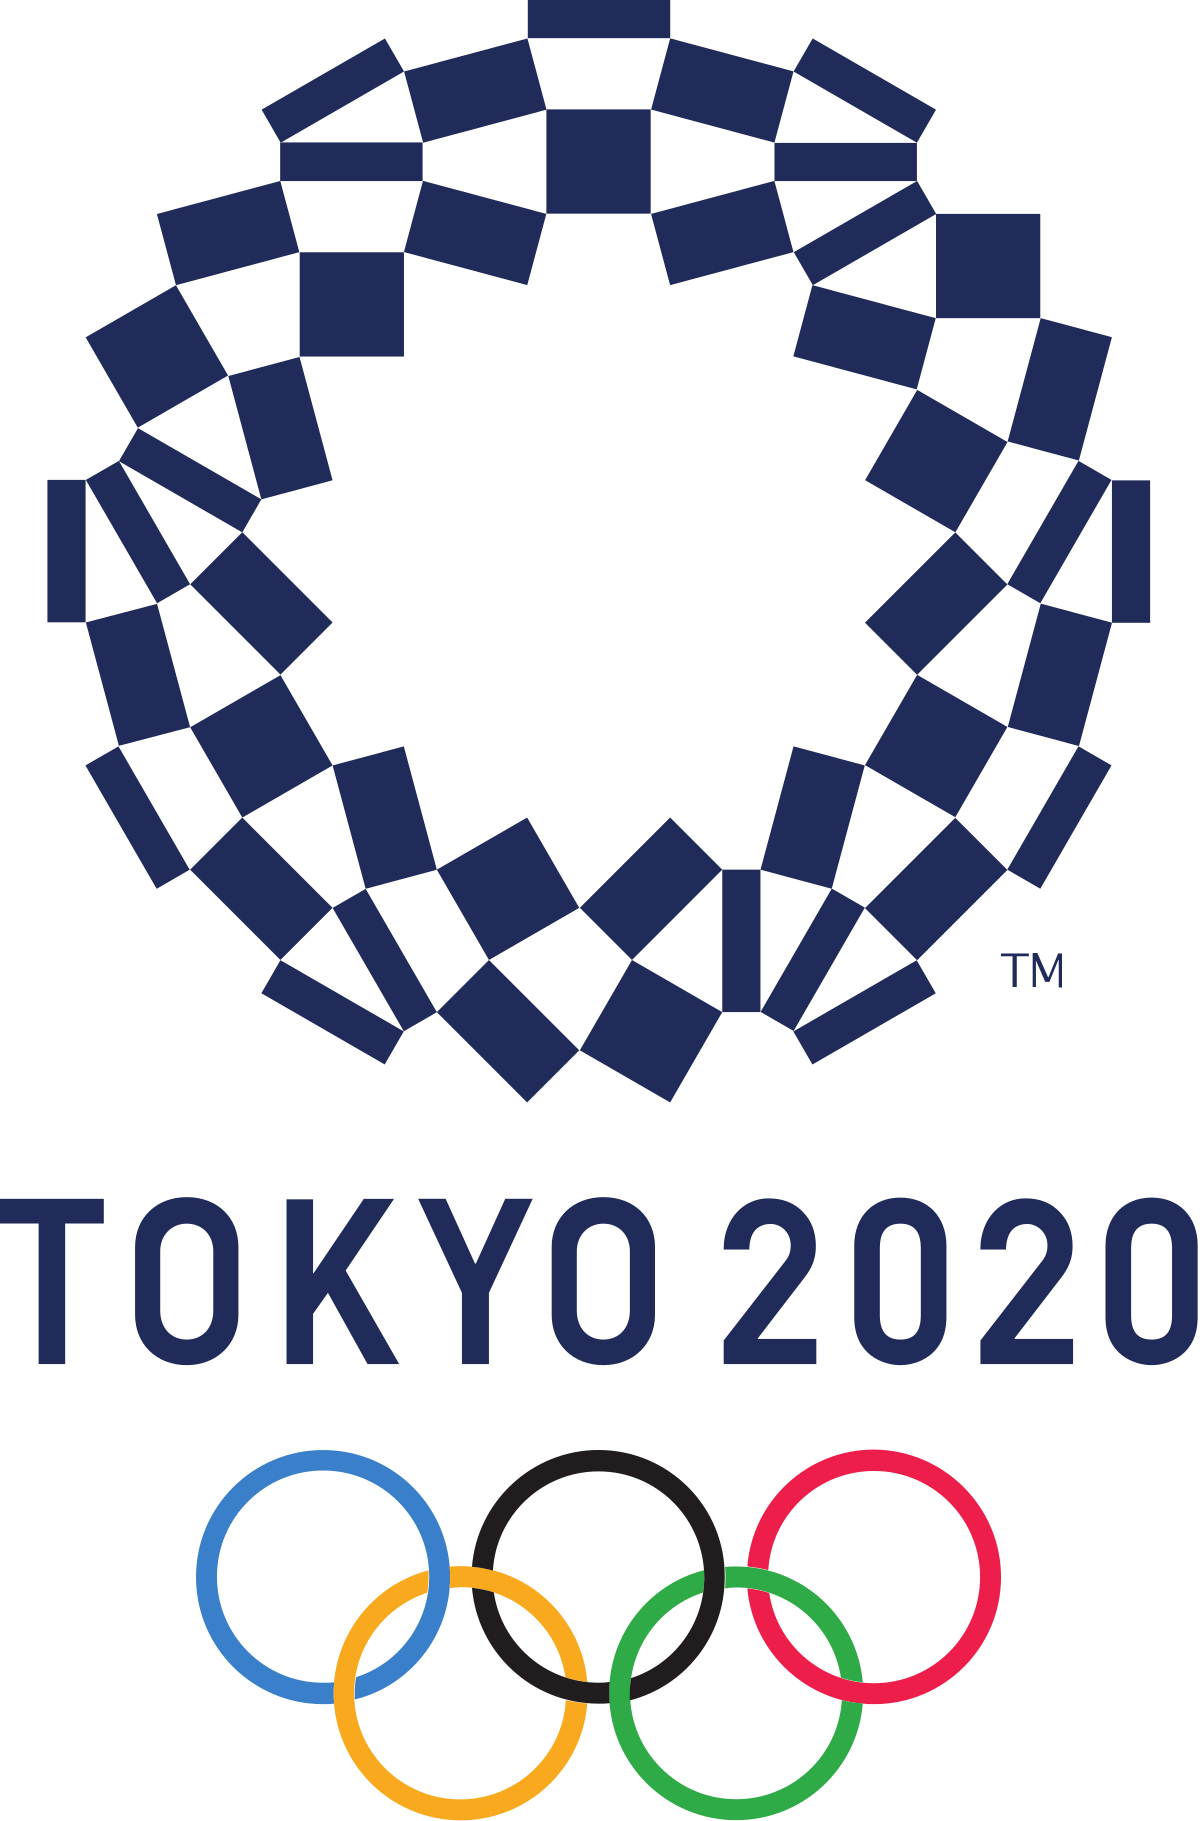 Olimpiade Musim Panas 2020 - Wikipedia bahasa Indonesia ...